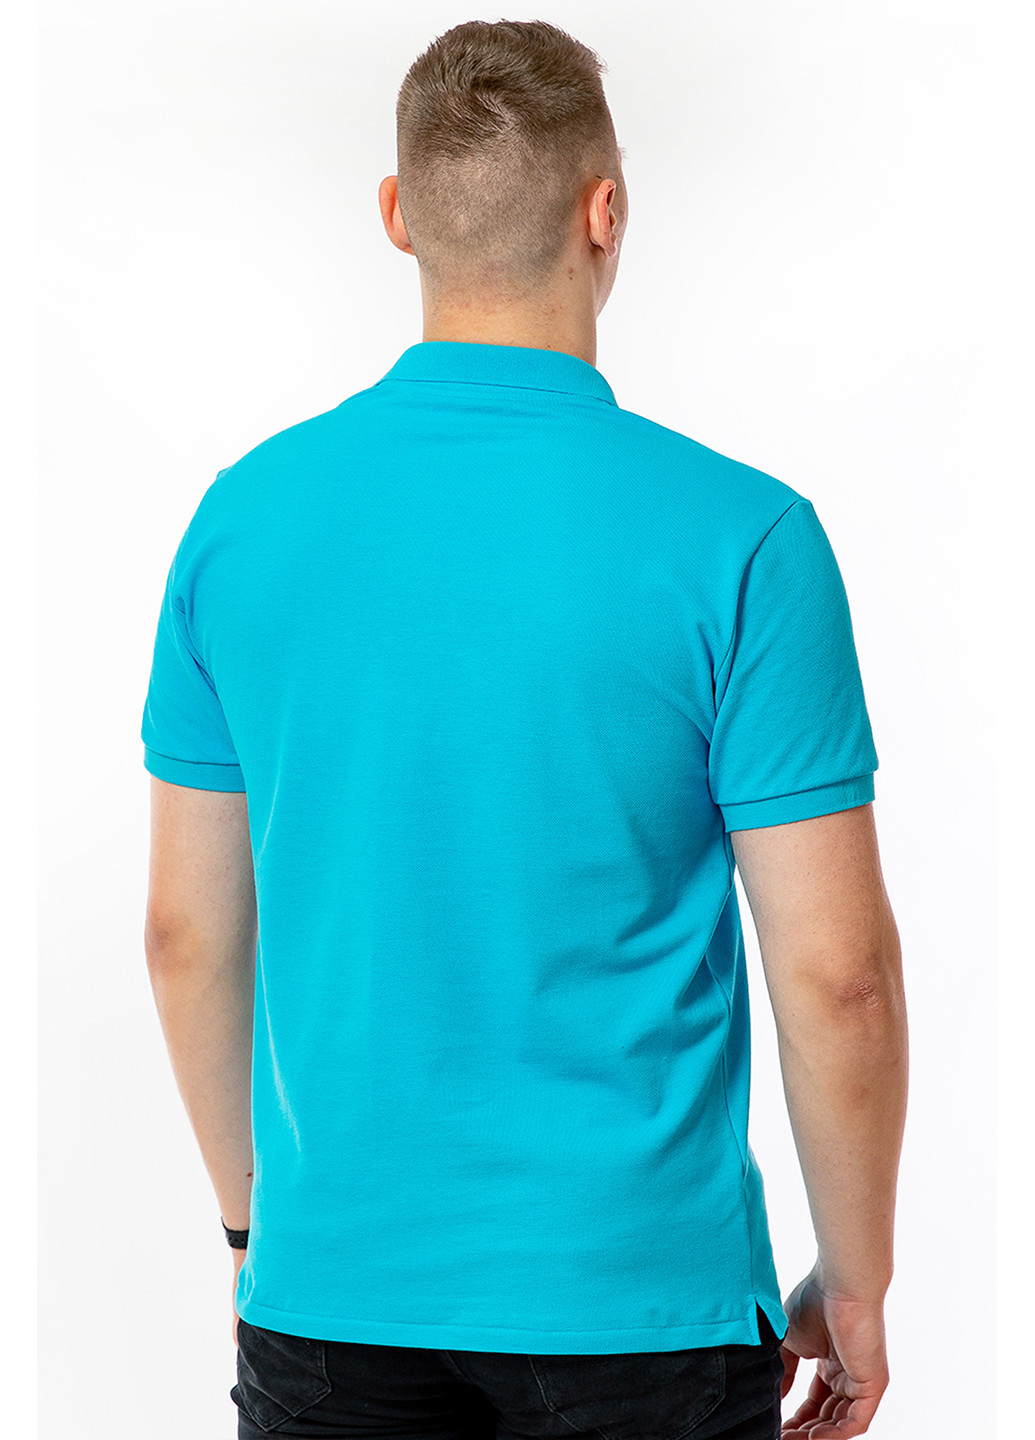 Голубой футболка-футболка-поло мужская для мужчин Kosta однотонная